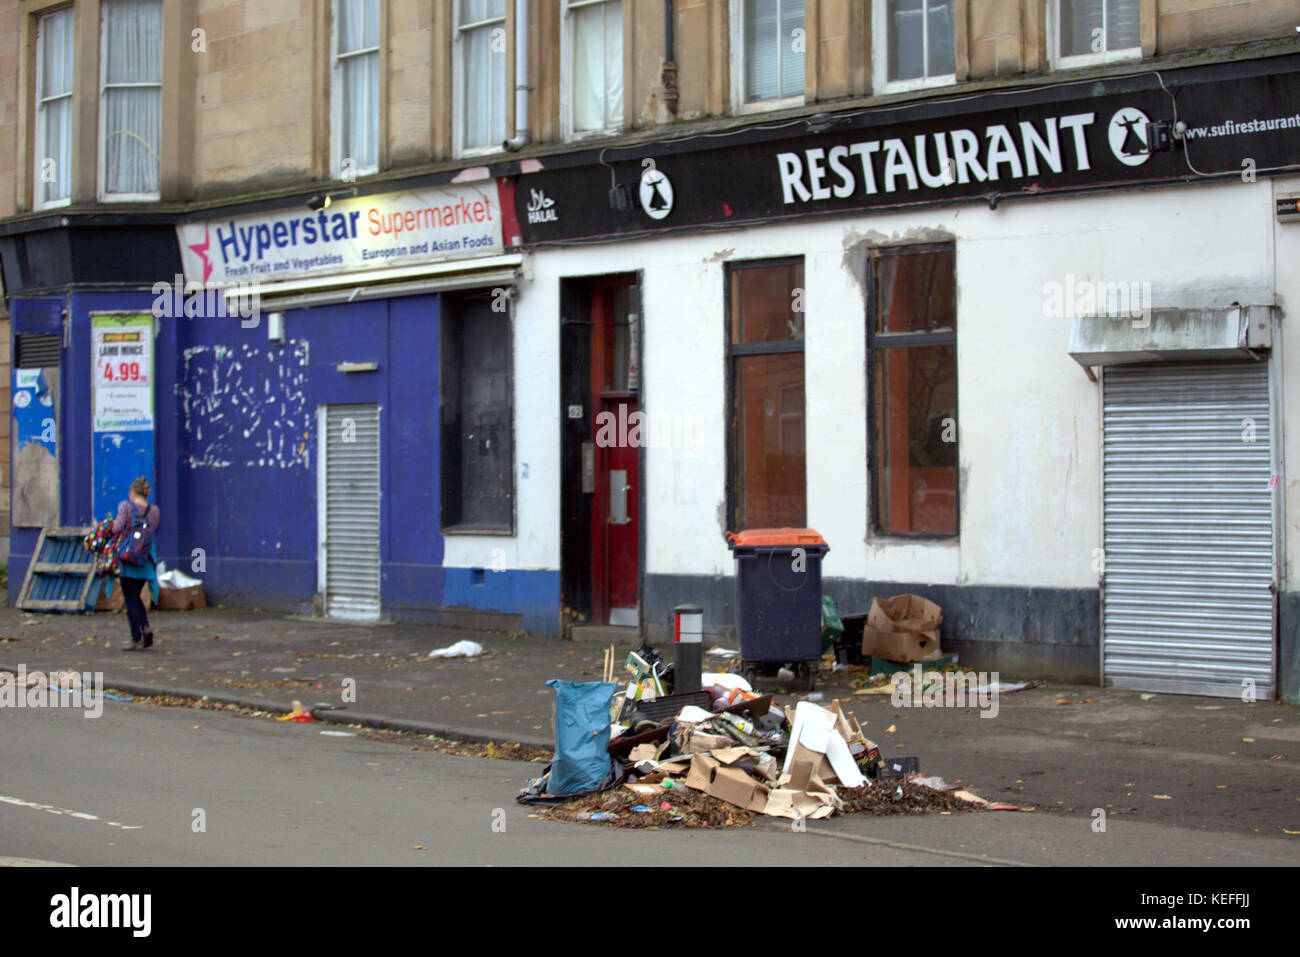 Les décharges sauvages déchets restaurant street govanhill, Glasgow, Royaume-Uni Banque D'Images